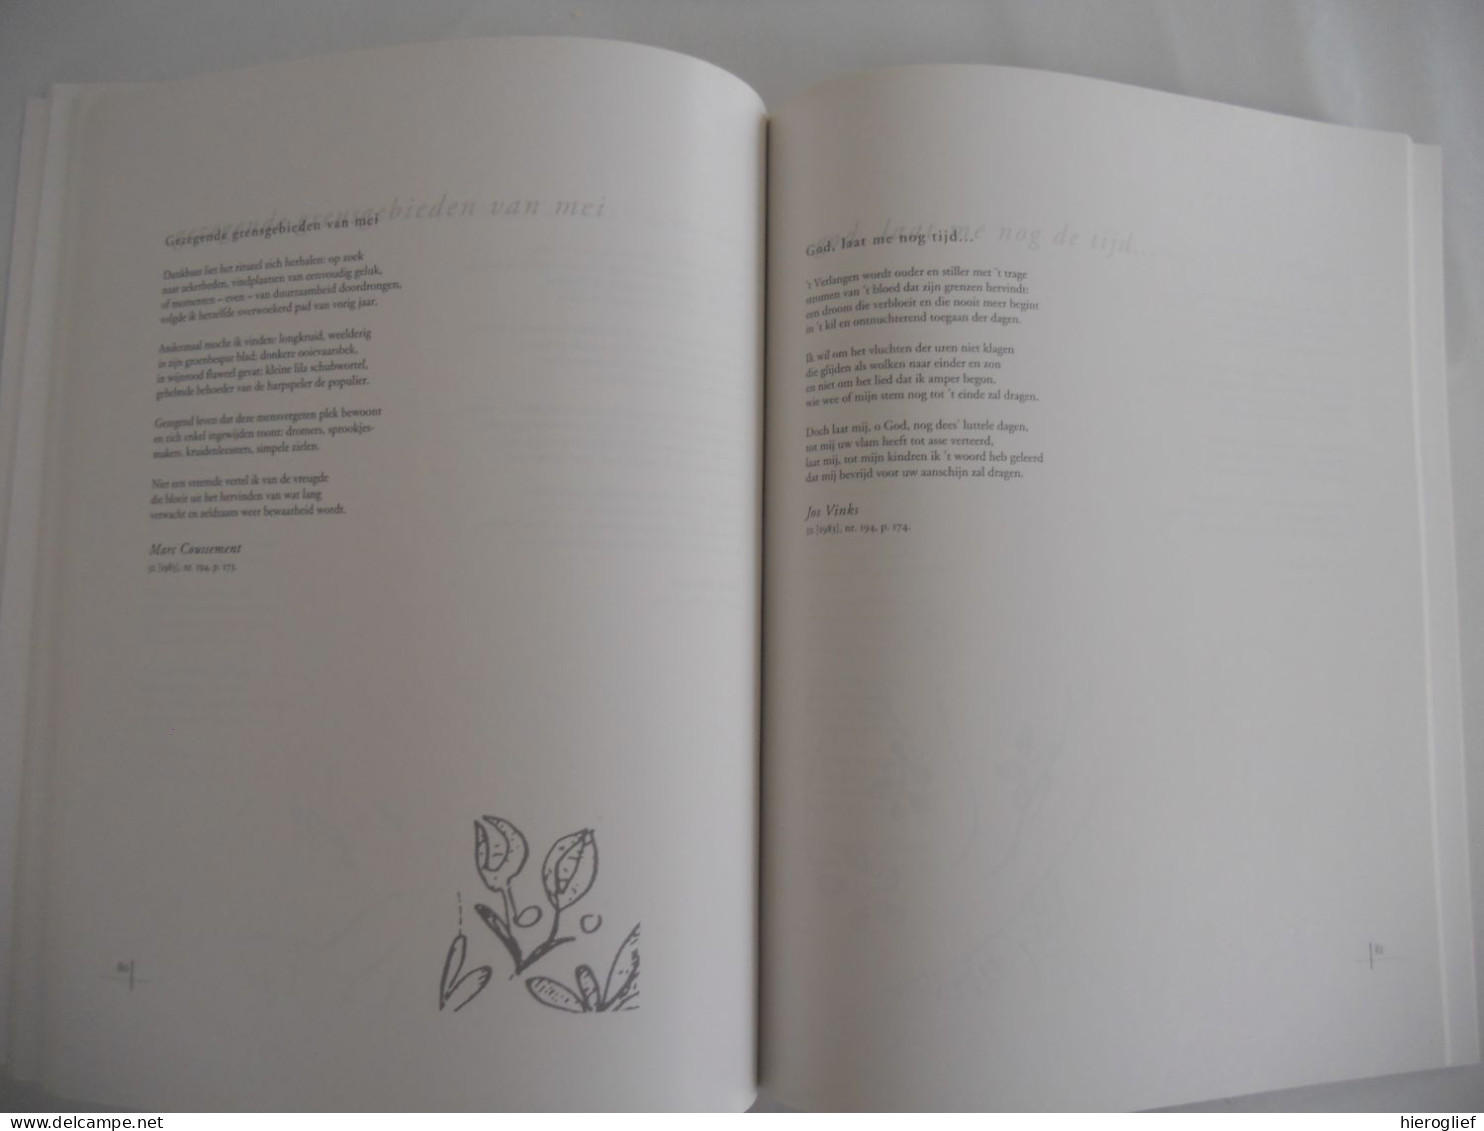 Poëtisch Bericht - Honderd gedichten uit Vlaanderen  - themanummr 250 tijdschrift VLAANDEREN 1994 dichters poëzie verzen